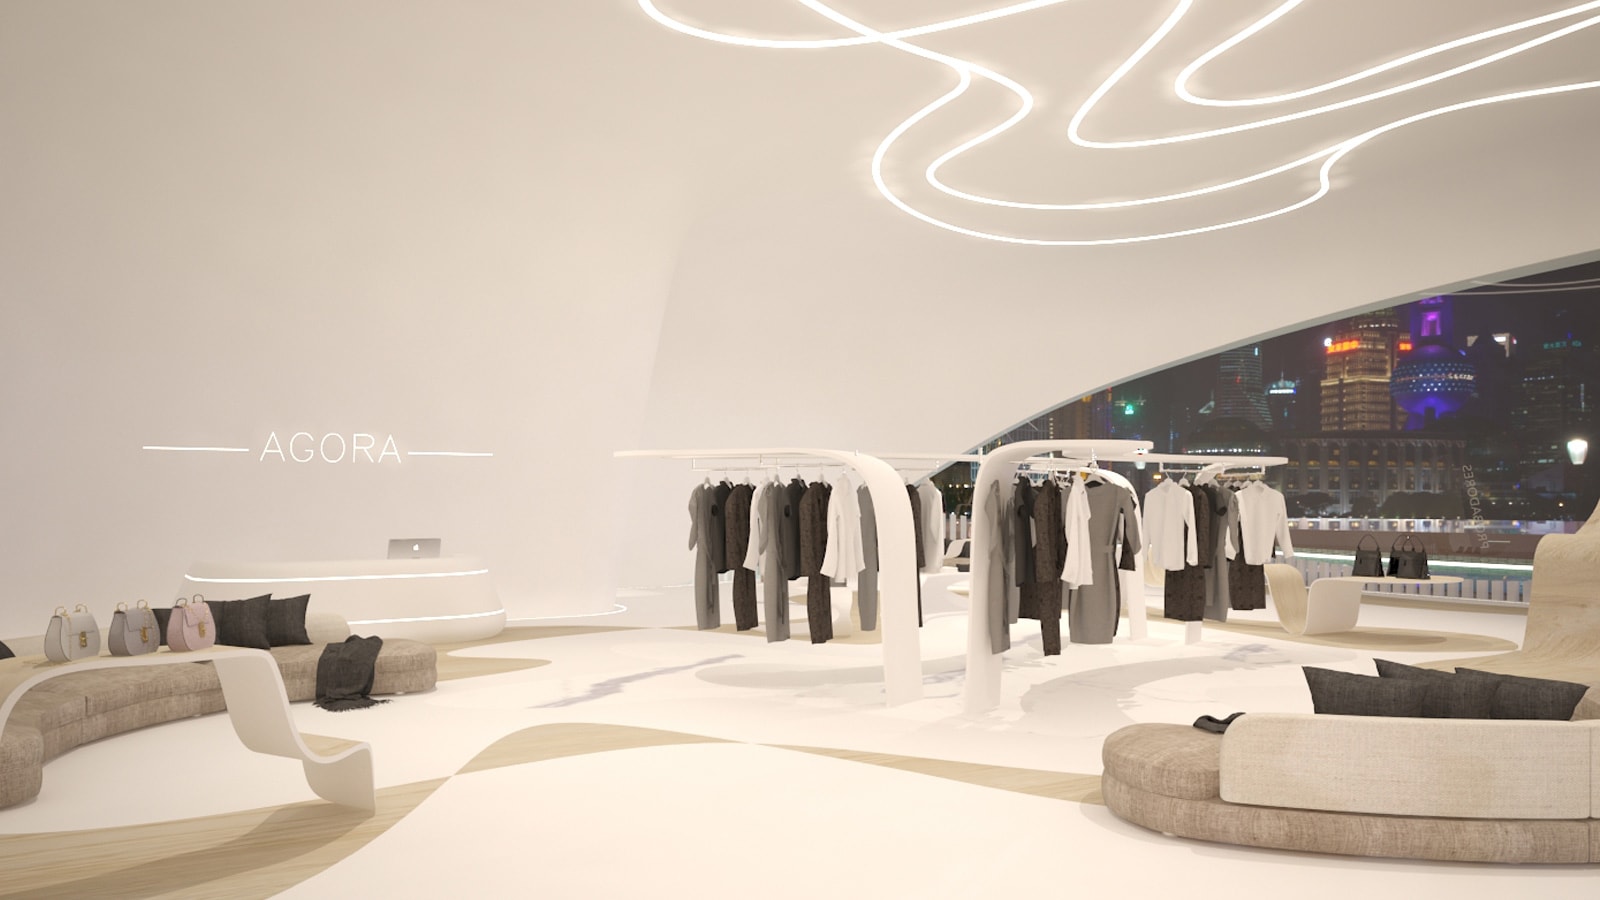 Finalistas XII Premios Porcelanosa: Ágora, una boutique de lujo en Nueva York